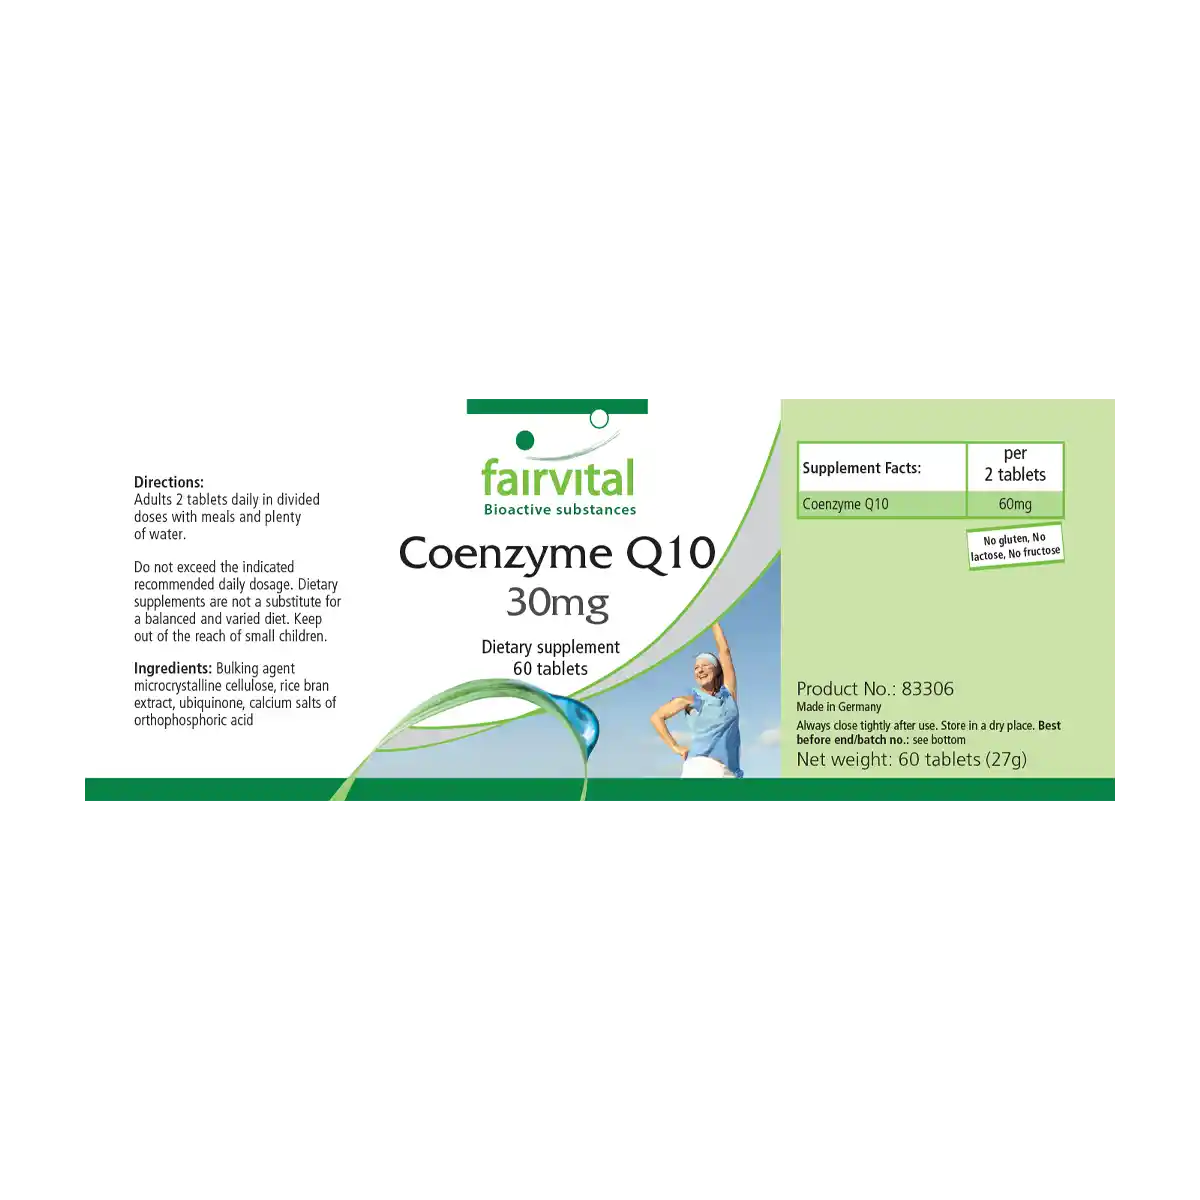 Co-Enzym Q10 30mg